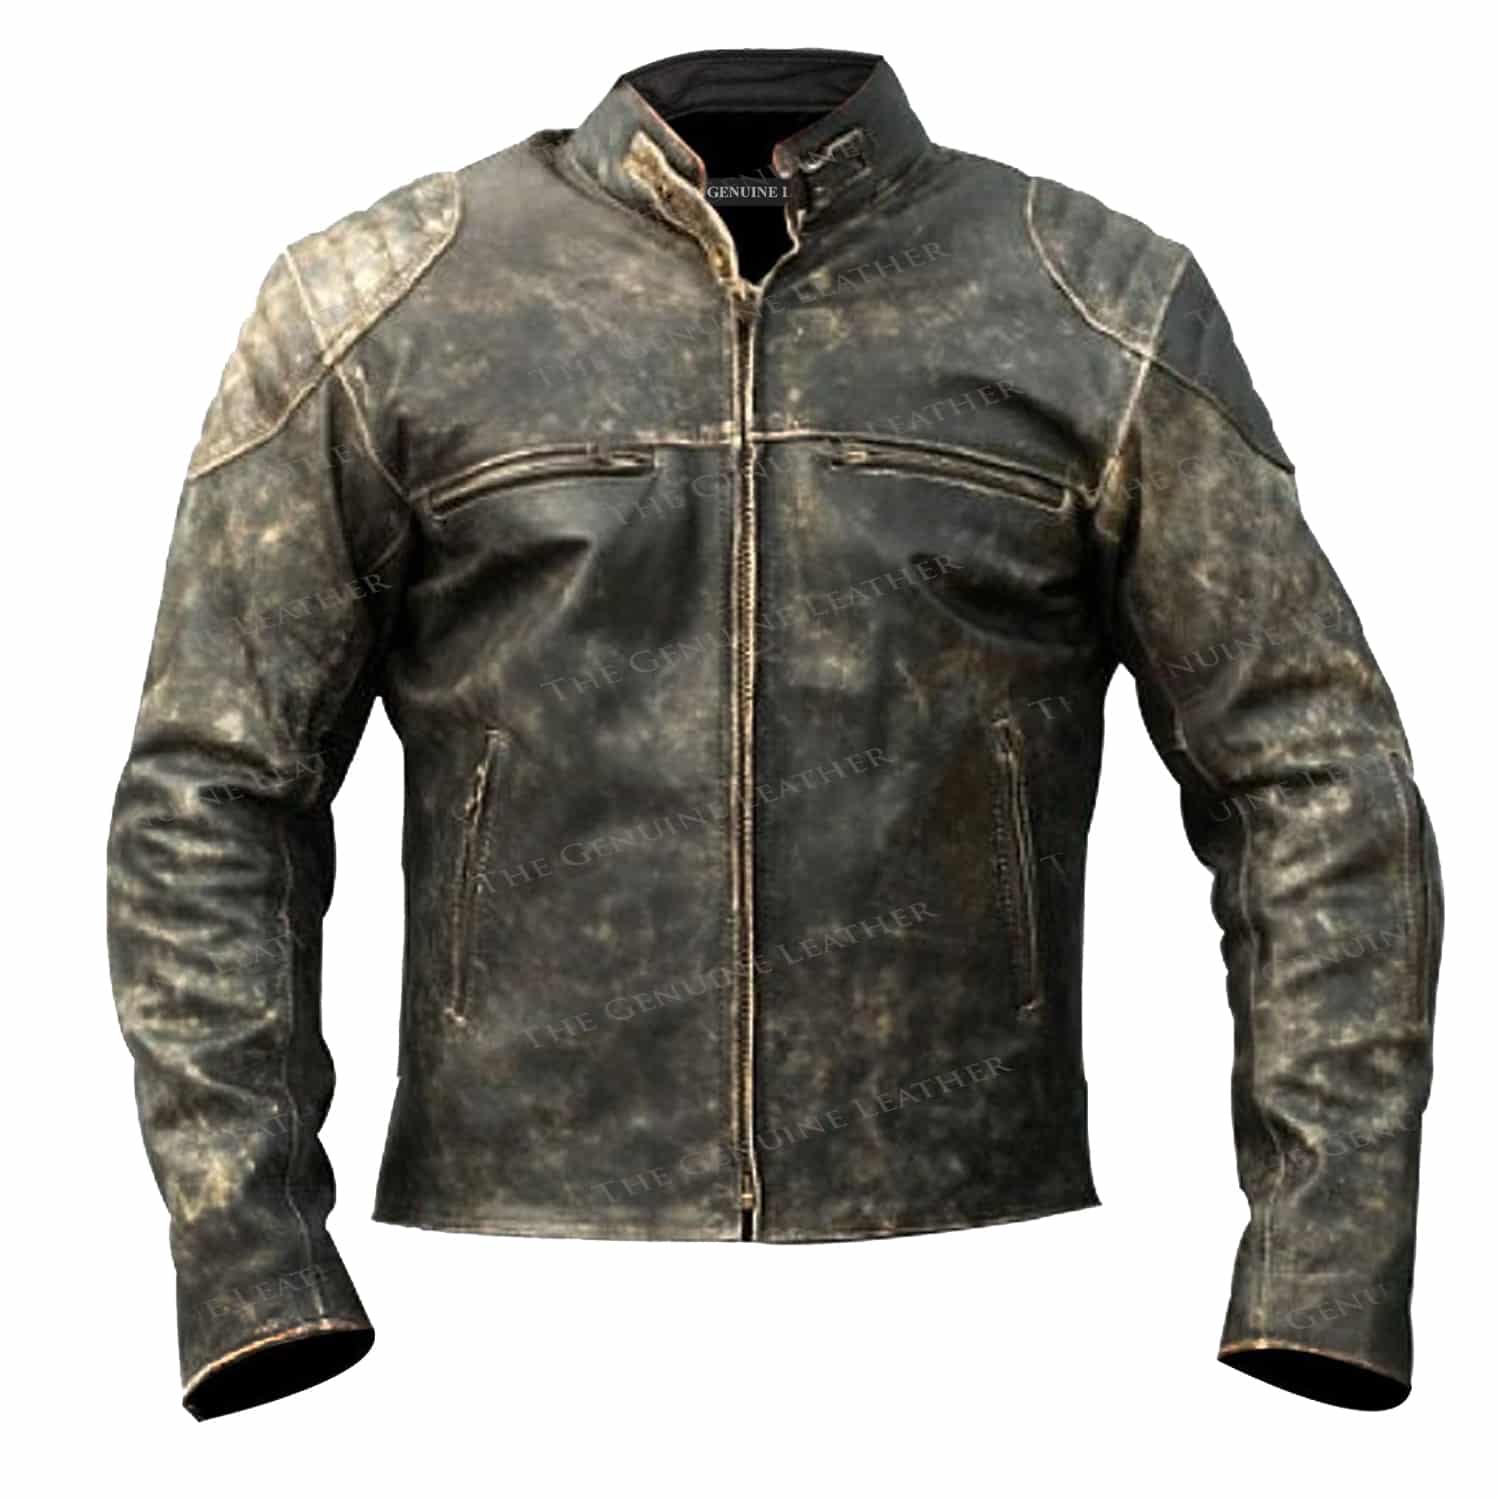 Details about   Men’s Motorcycle Biker Vintage Cafe Racer Distressed Black Real Leather Jacket 